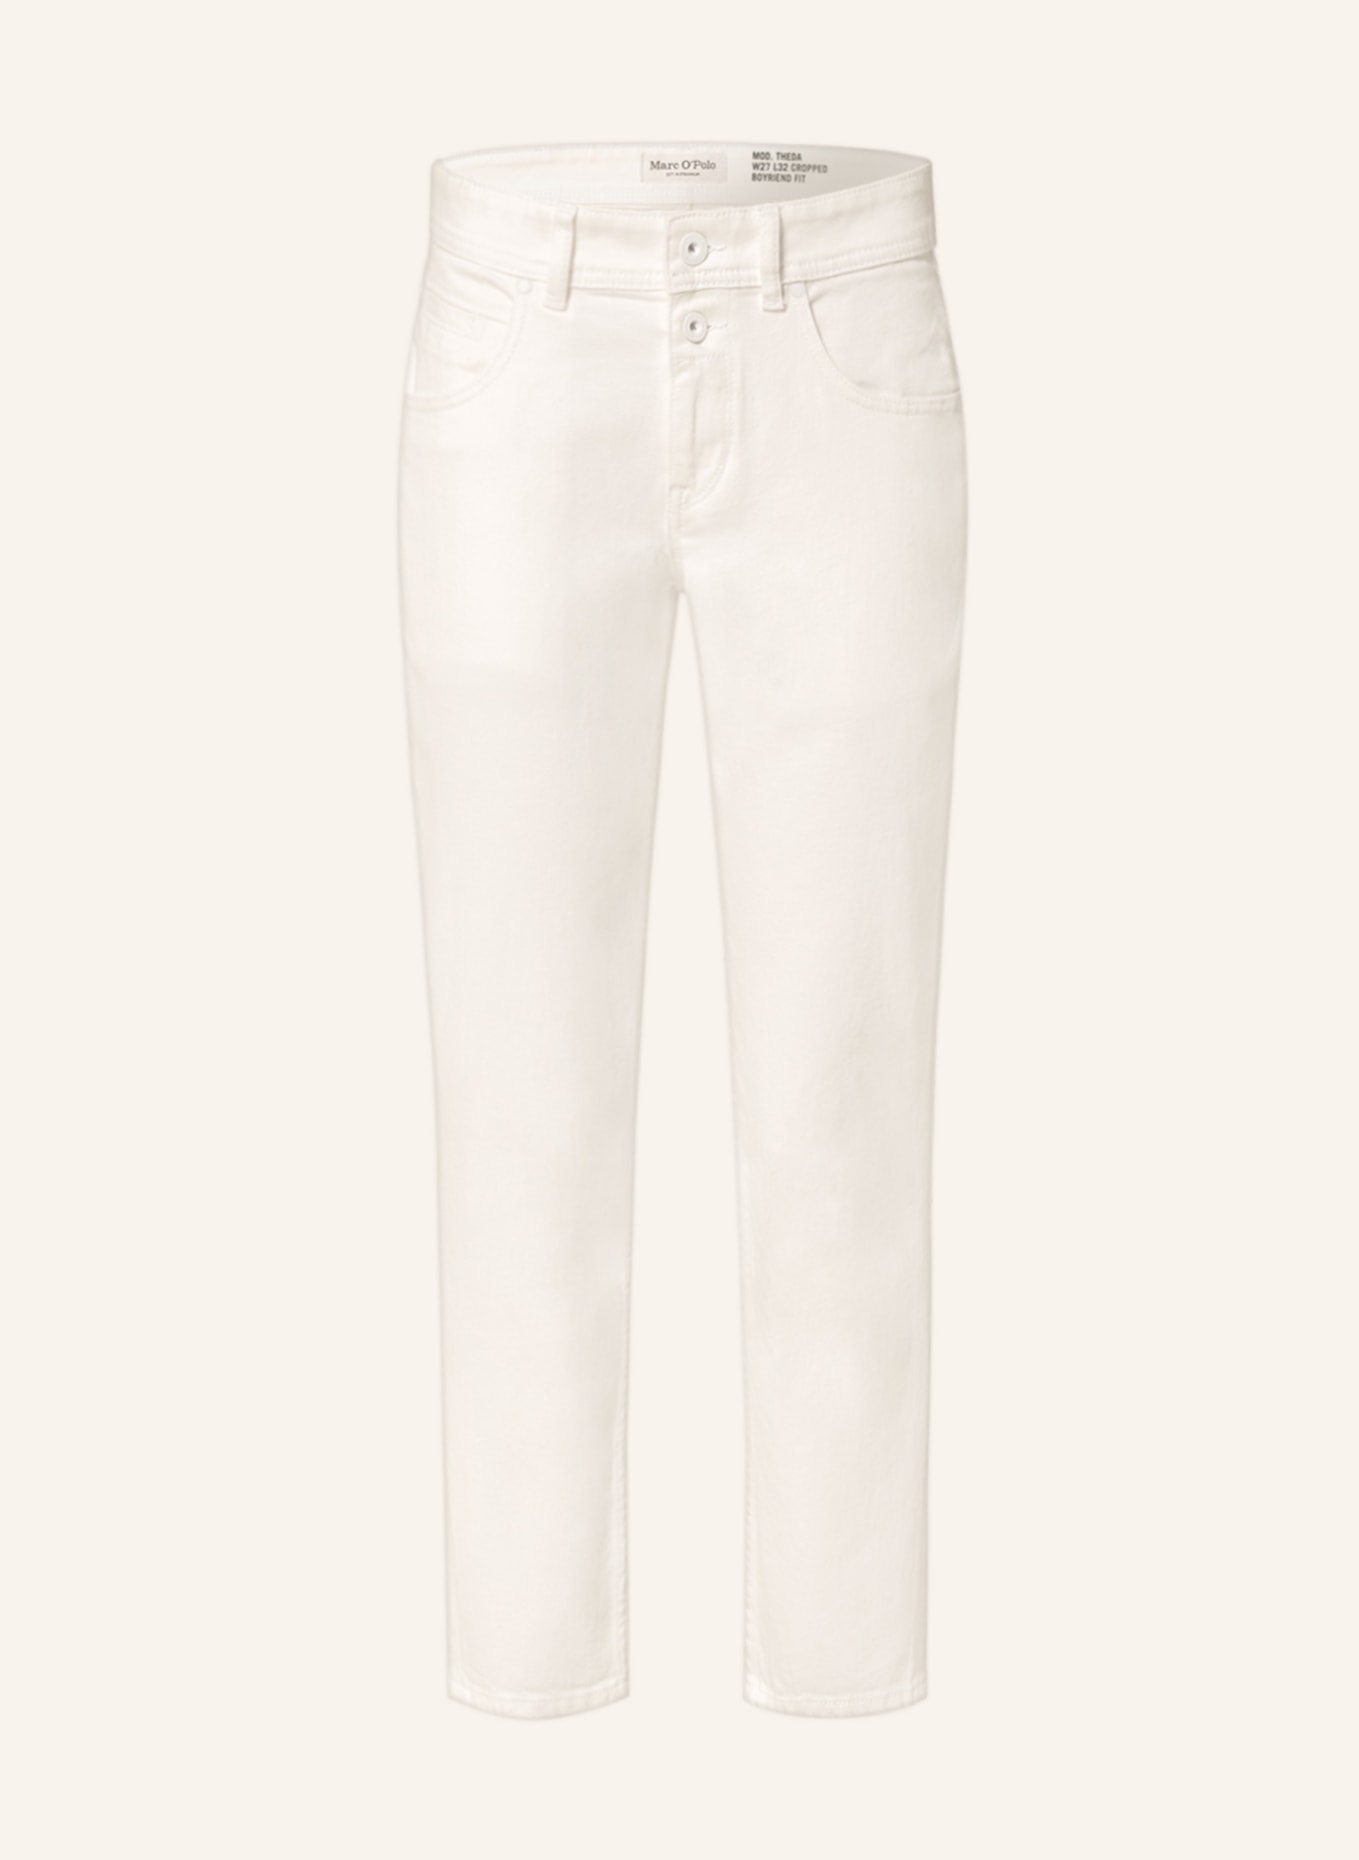 Marc O'Polo Boyfriend Jeans, Farbe: 006 Clean white garment dye wash (Bild 1)